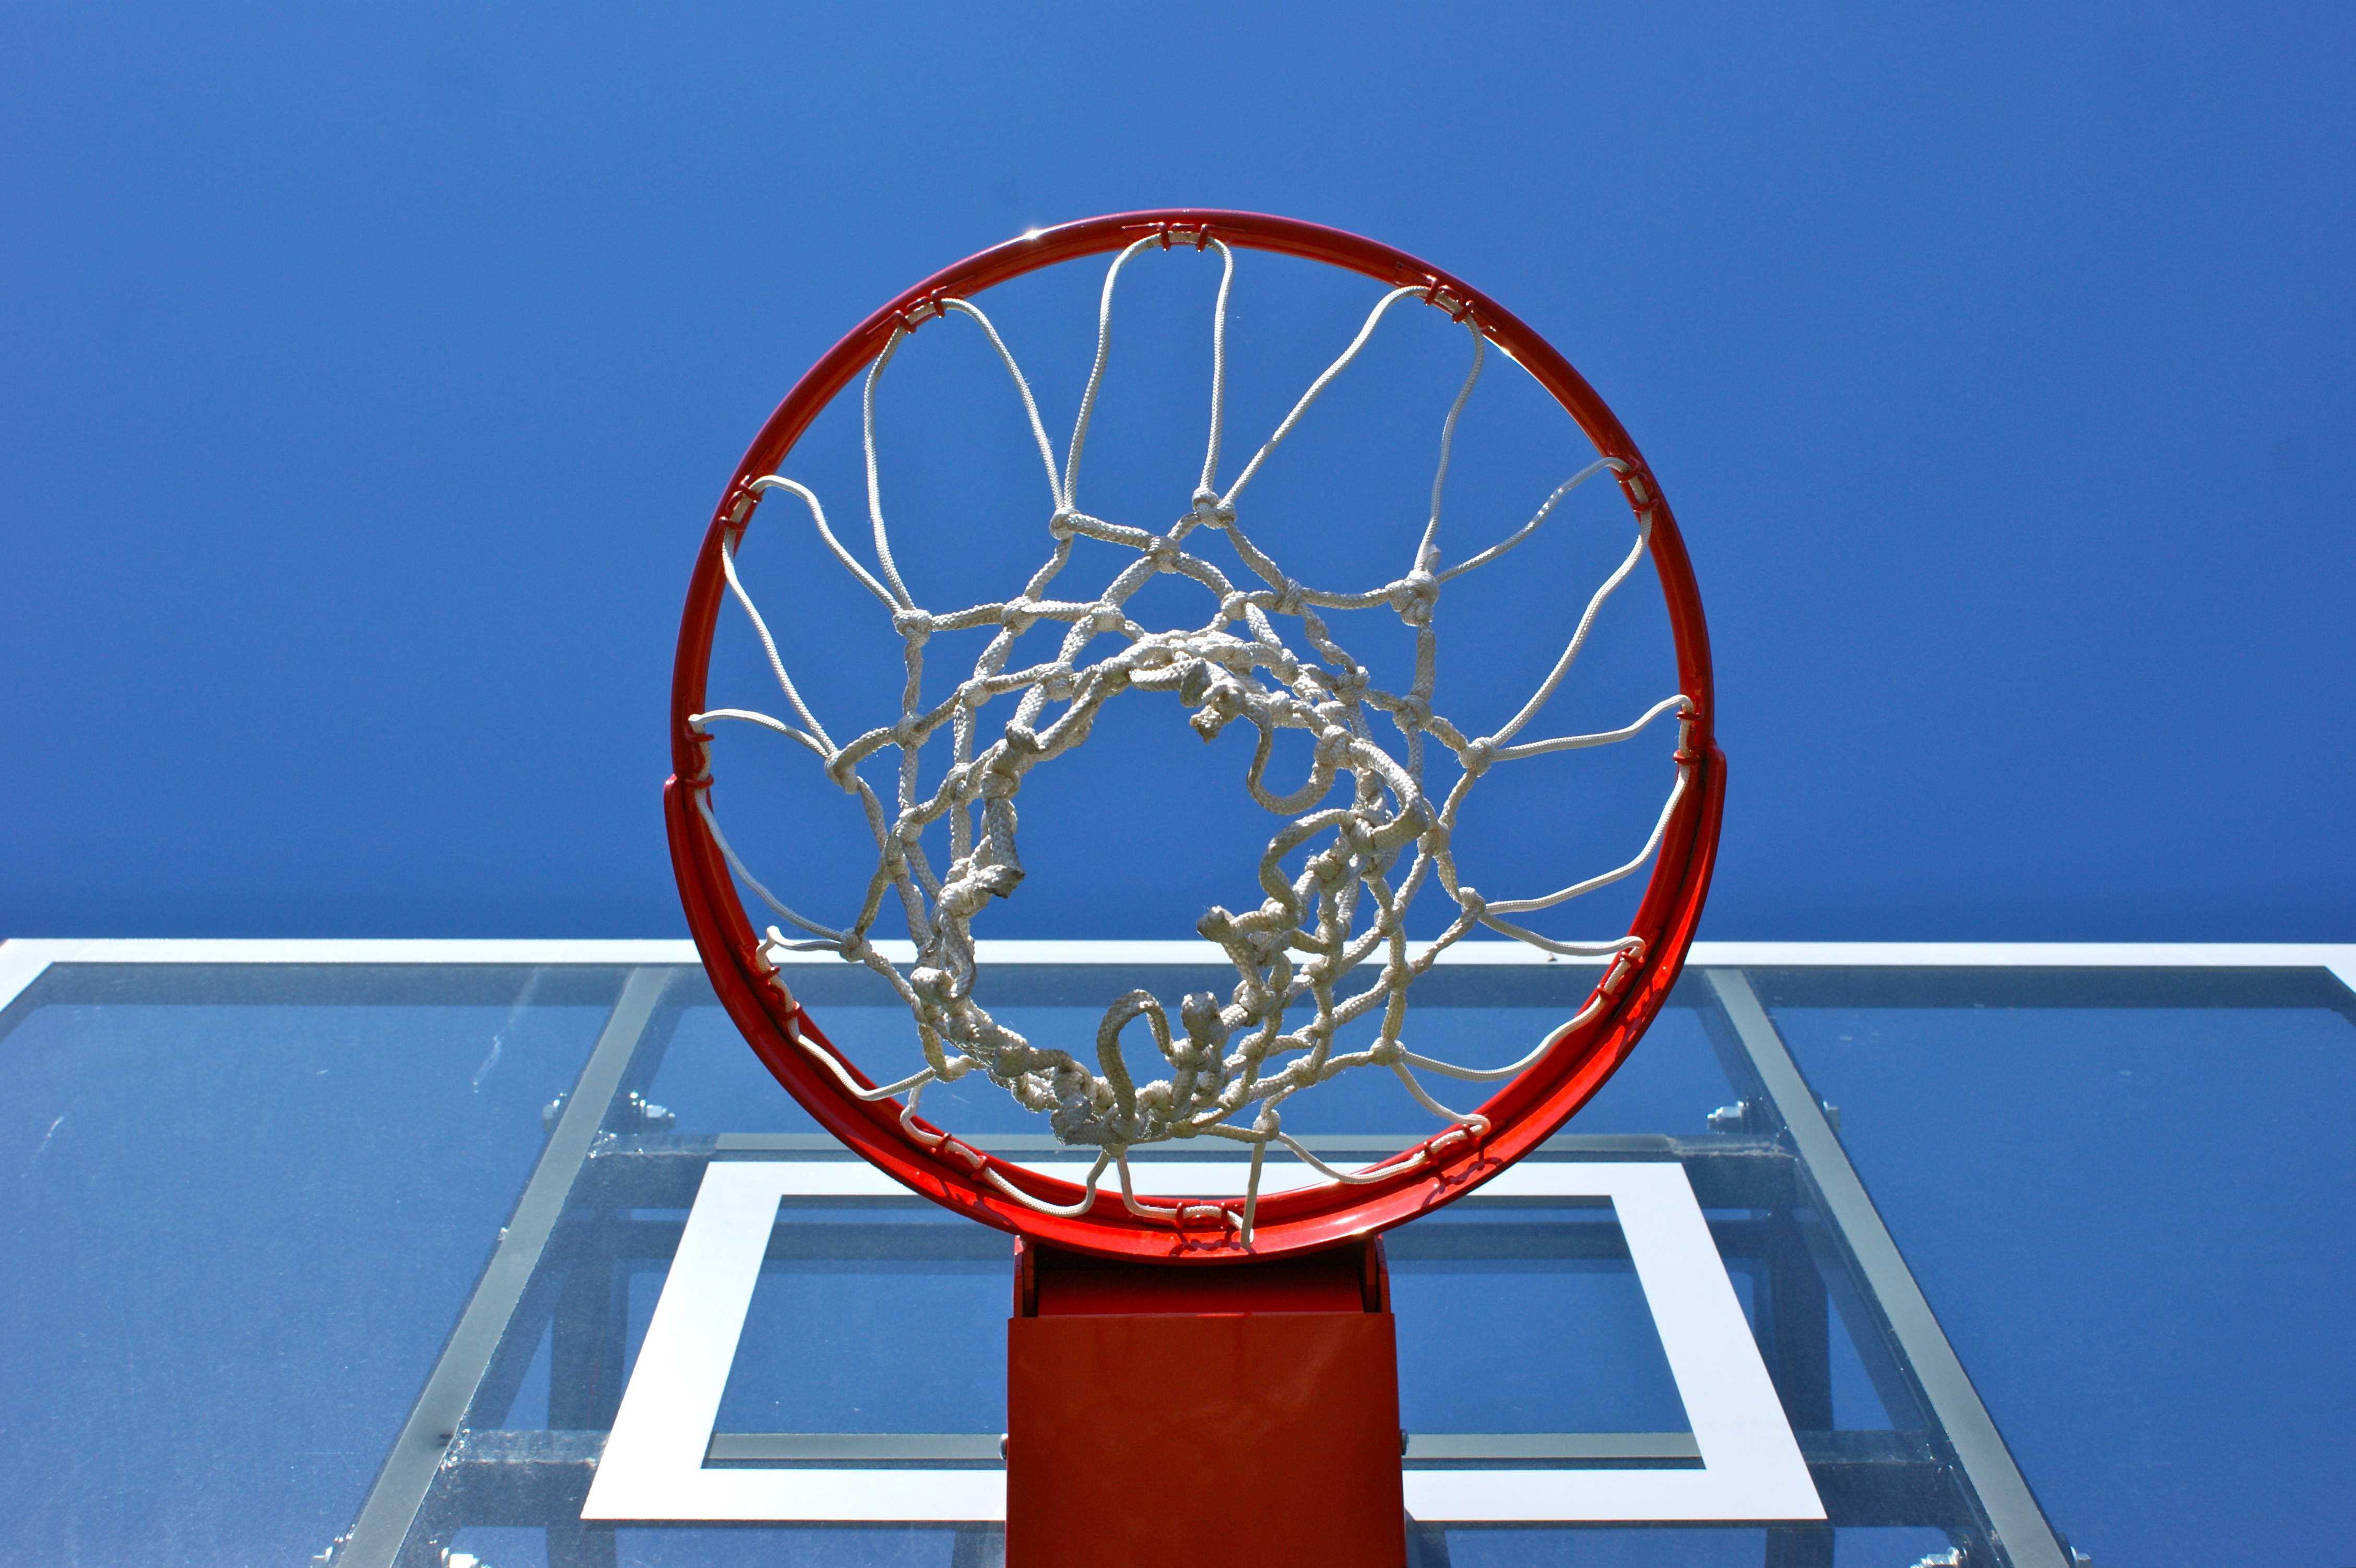 Basketball in hoop